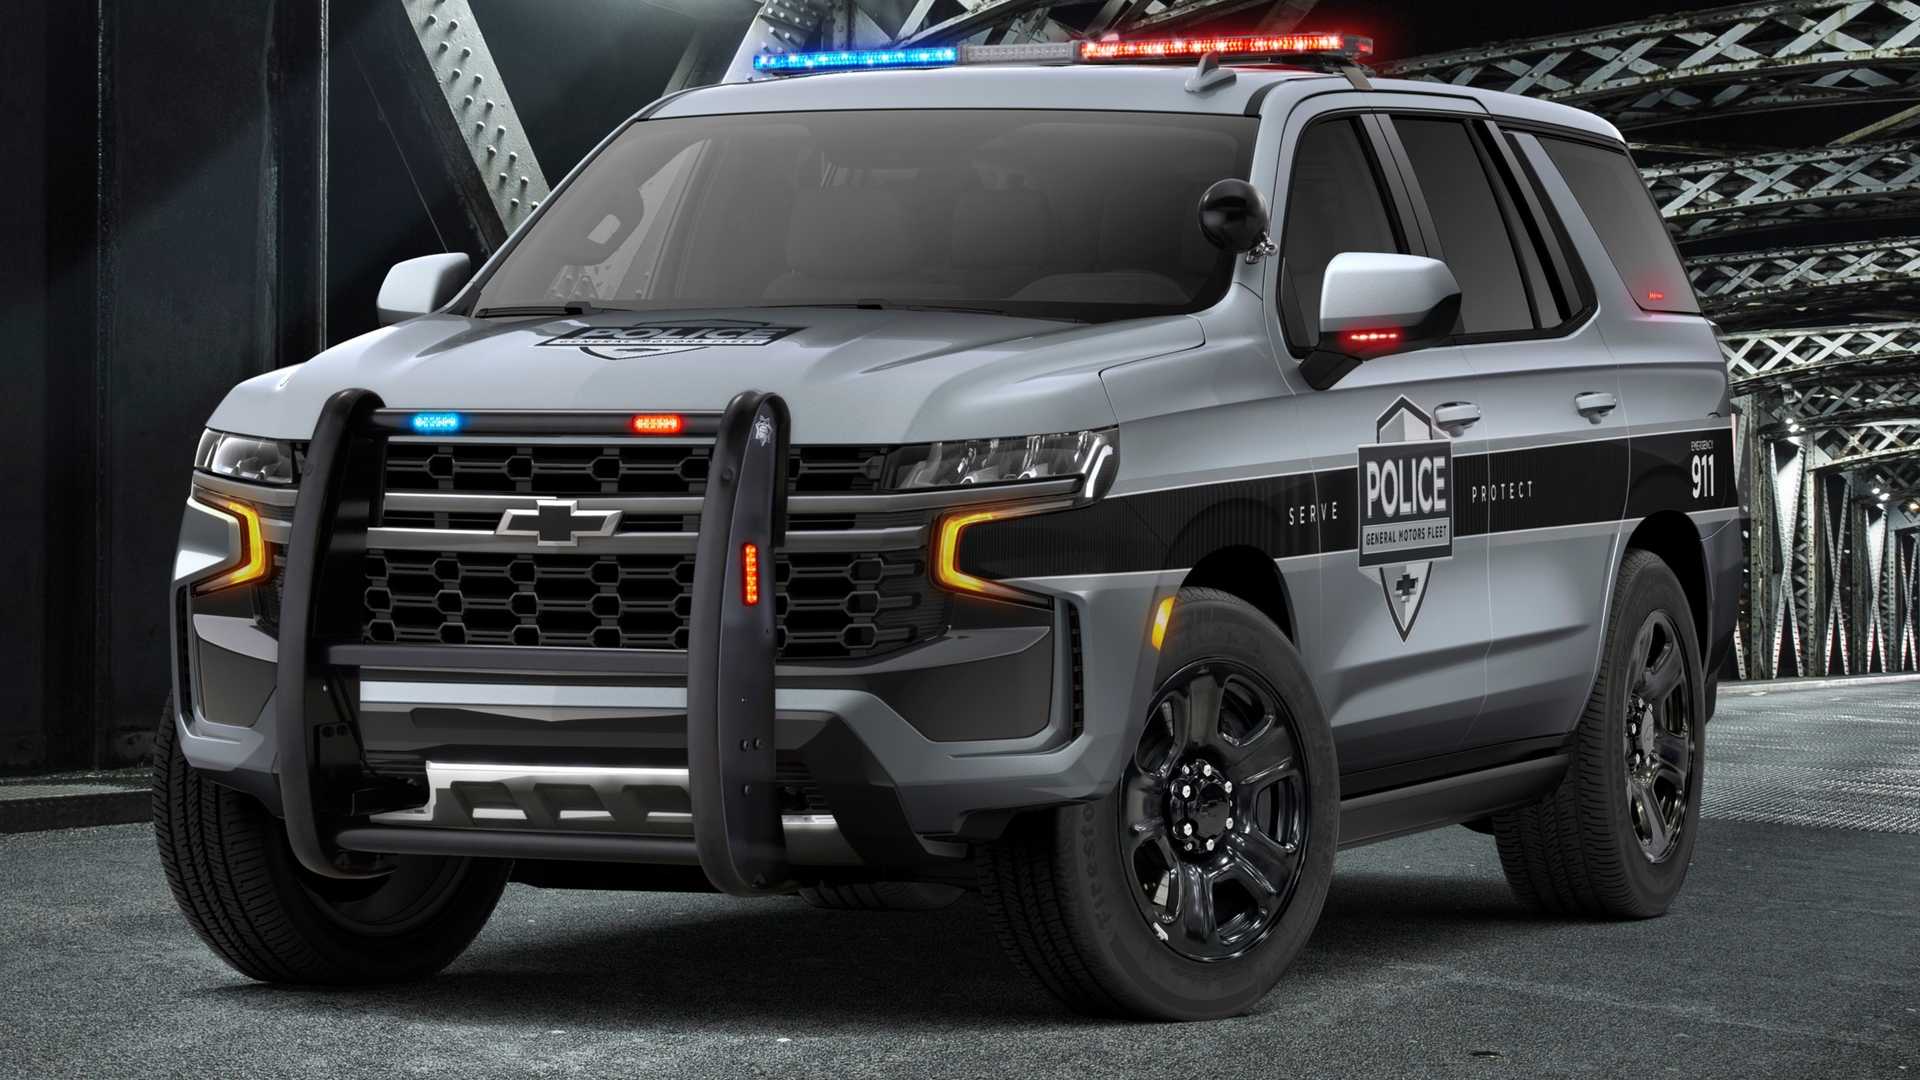 2021-chevrolet-tahoe-police-pursuit-vehicle.jpg